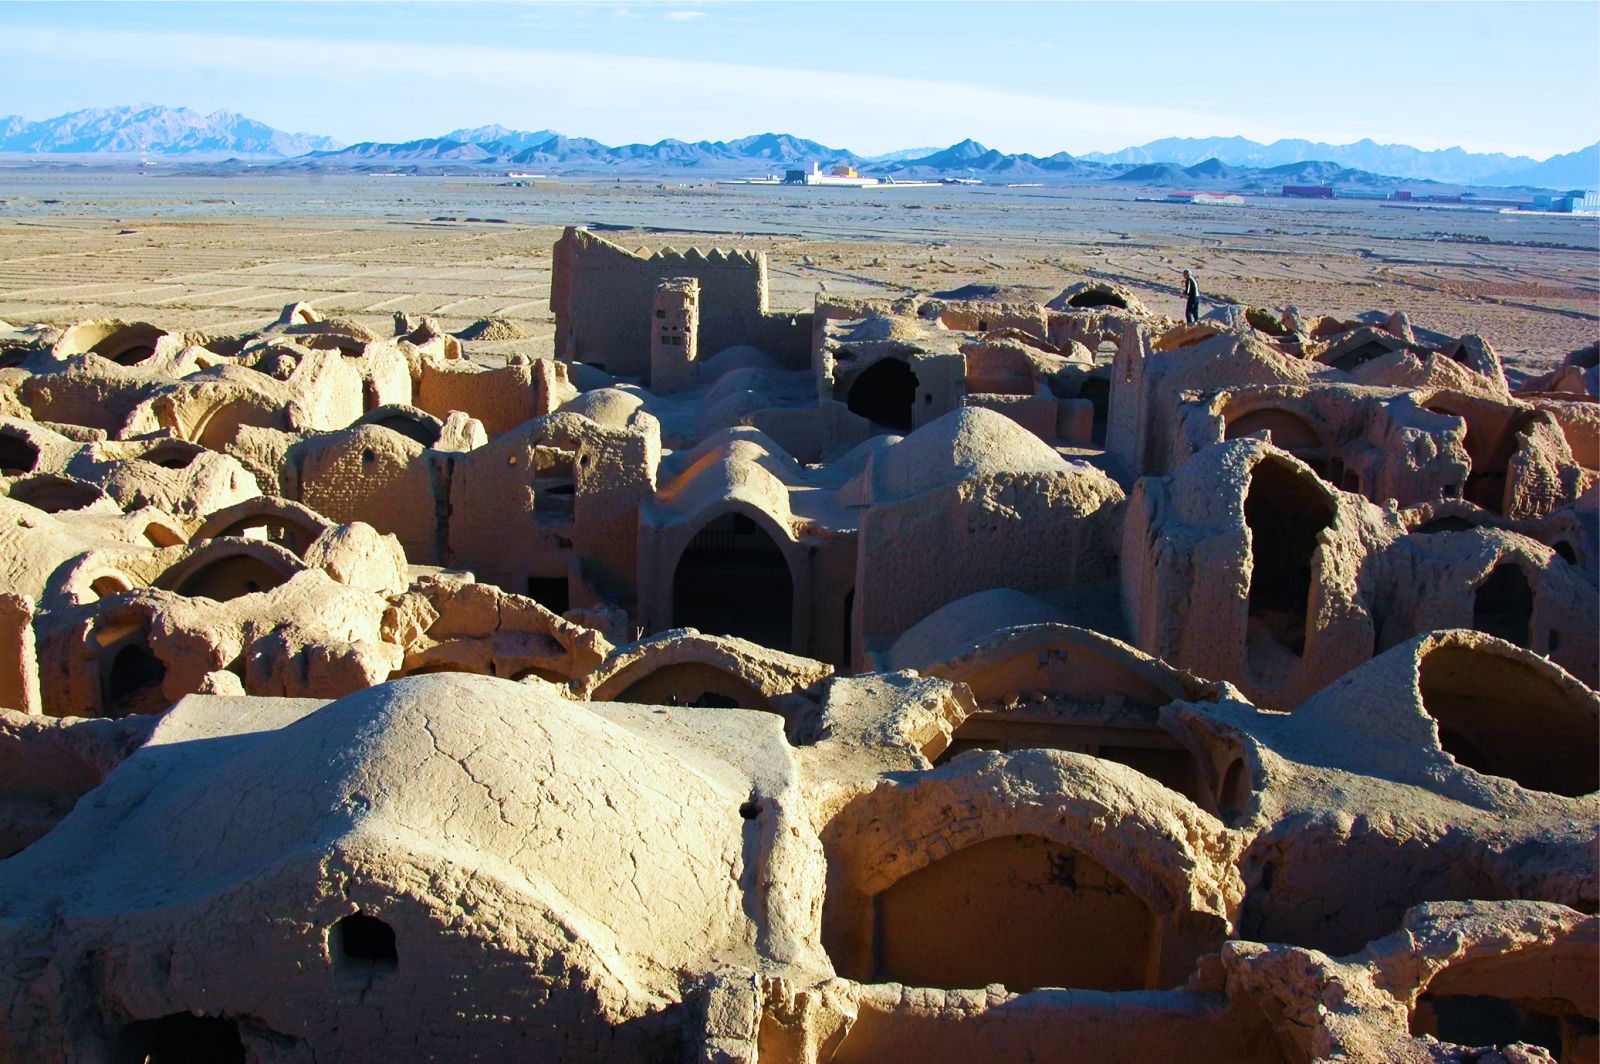  Tháp đón gió - tuyệt tác kiến trúc của thành phố sa mạc Yazd  - Ảnh 10.